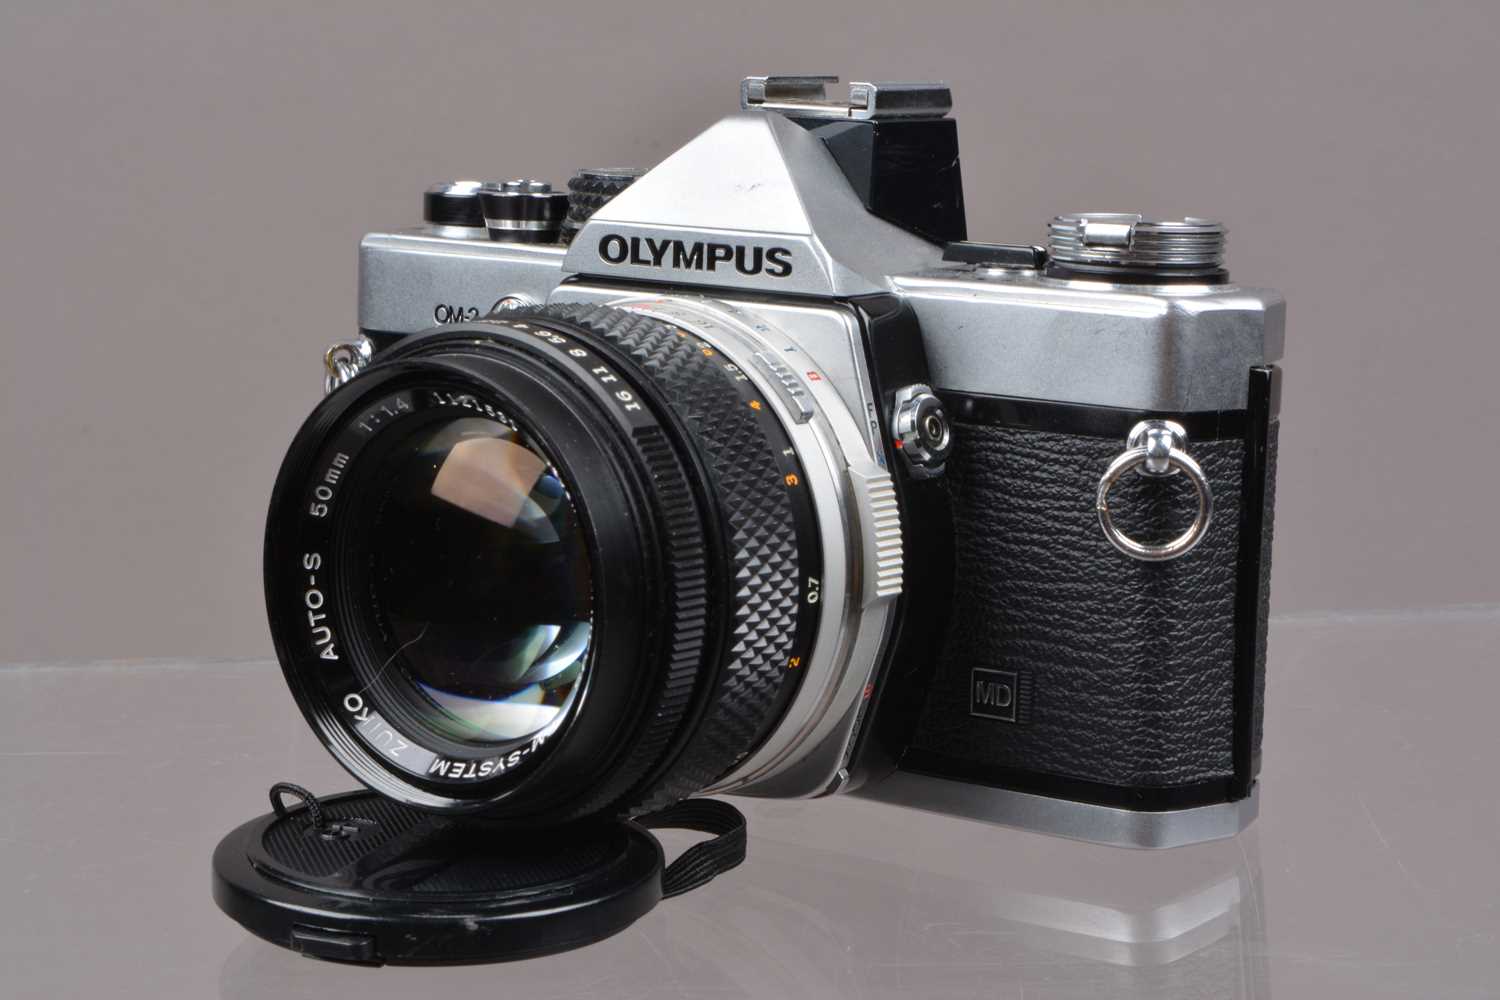 Lot 3 - An Olympus OM-2n MD SLR Camera